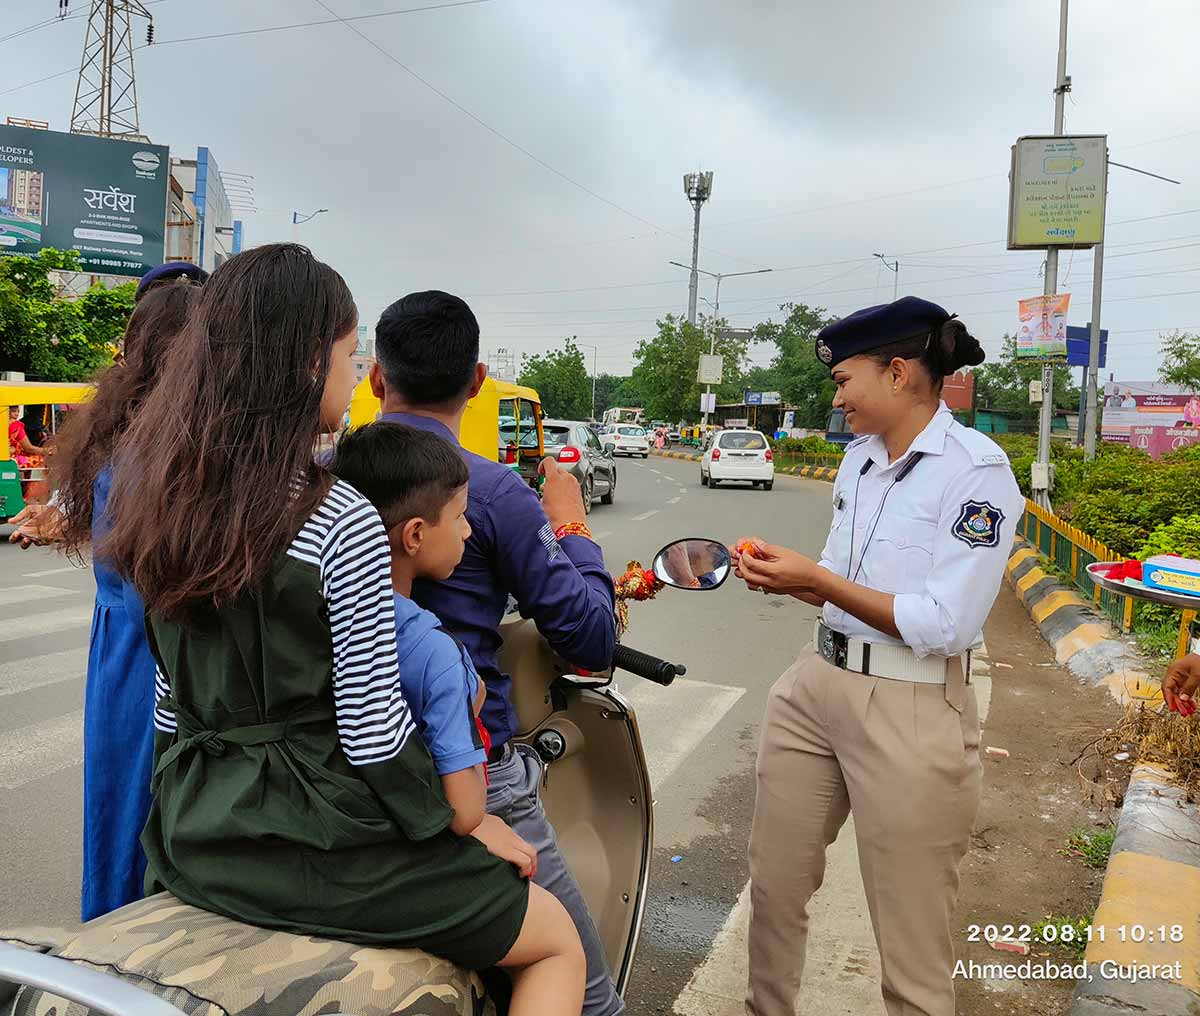  દીપિકા ખુમાણ, ઋત્વીજ સોની, અમદાવાદ: અમદાવાદમાં આજે ટ્રાફિક પોલીસ (Ahmedabad traffic police) મહિલાઓએ રક્ષાબંધનની અનોખી રીતે ઉજવણી કરી છે. આજે રક્ષાબંધન (Raksha Bandhan)ના અવસરે સવારથી જ ટ્રાફિક મહિલા પોલીસે હાથમાં મેમોની બુક નહીં પરંતુ કંકુ, ચોખા, રાખડી અને મીઠાઈ સજાવેલી થાળી રાખી હતી. જેની પાછળનું કારણ હતું કે લોકો તહેવારના દિવસે પોતાના જીવનનું મૂલ્ય સમજે અને પોતાની સુરક્ષાનું ધ્યાન રાખે. બીજી તરફ અમદાવાદની સાબરમતી મધ્યસ્થ જેલ (Sabarmati central jail) ખાતે રક્ષાબંધનની ઉજવણી કરવામાં આવી હતી. આ સમયે ખૂબ જ ભાવુક દ્રશ્યો સર્જાયા હતા.